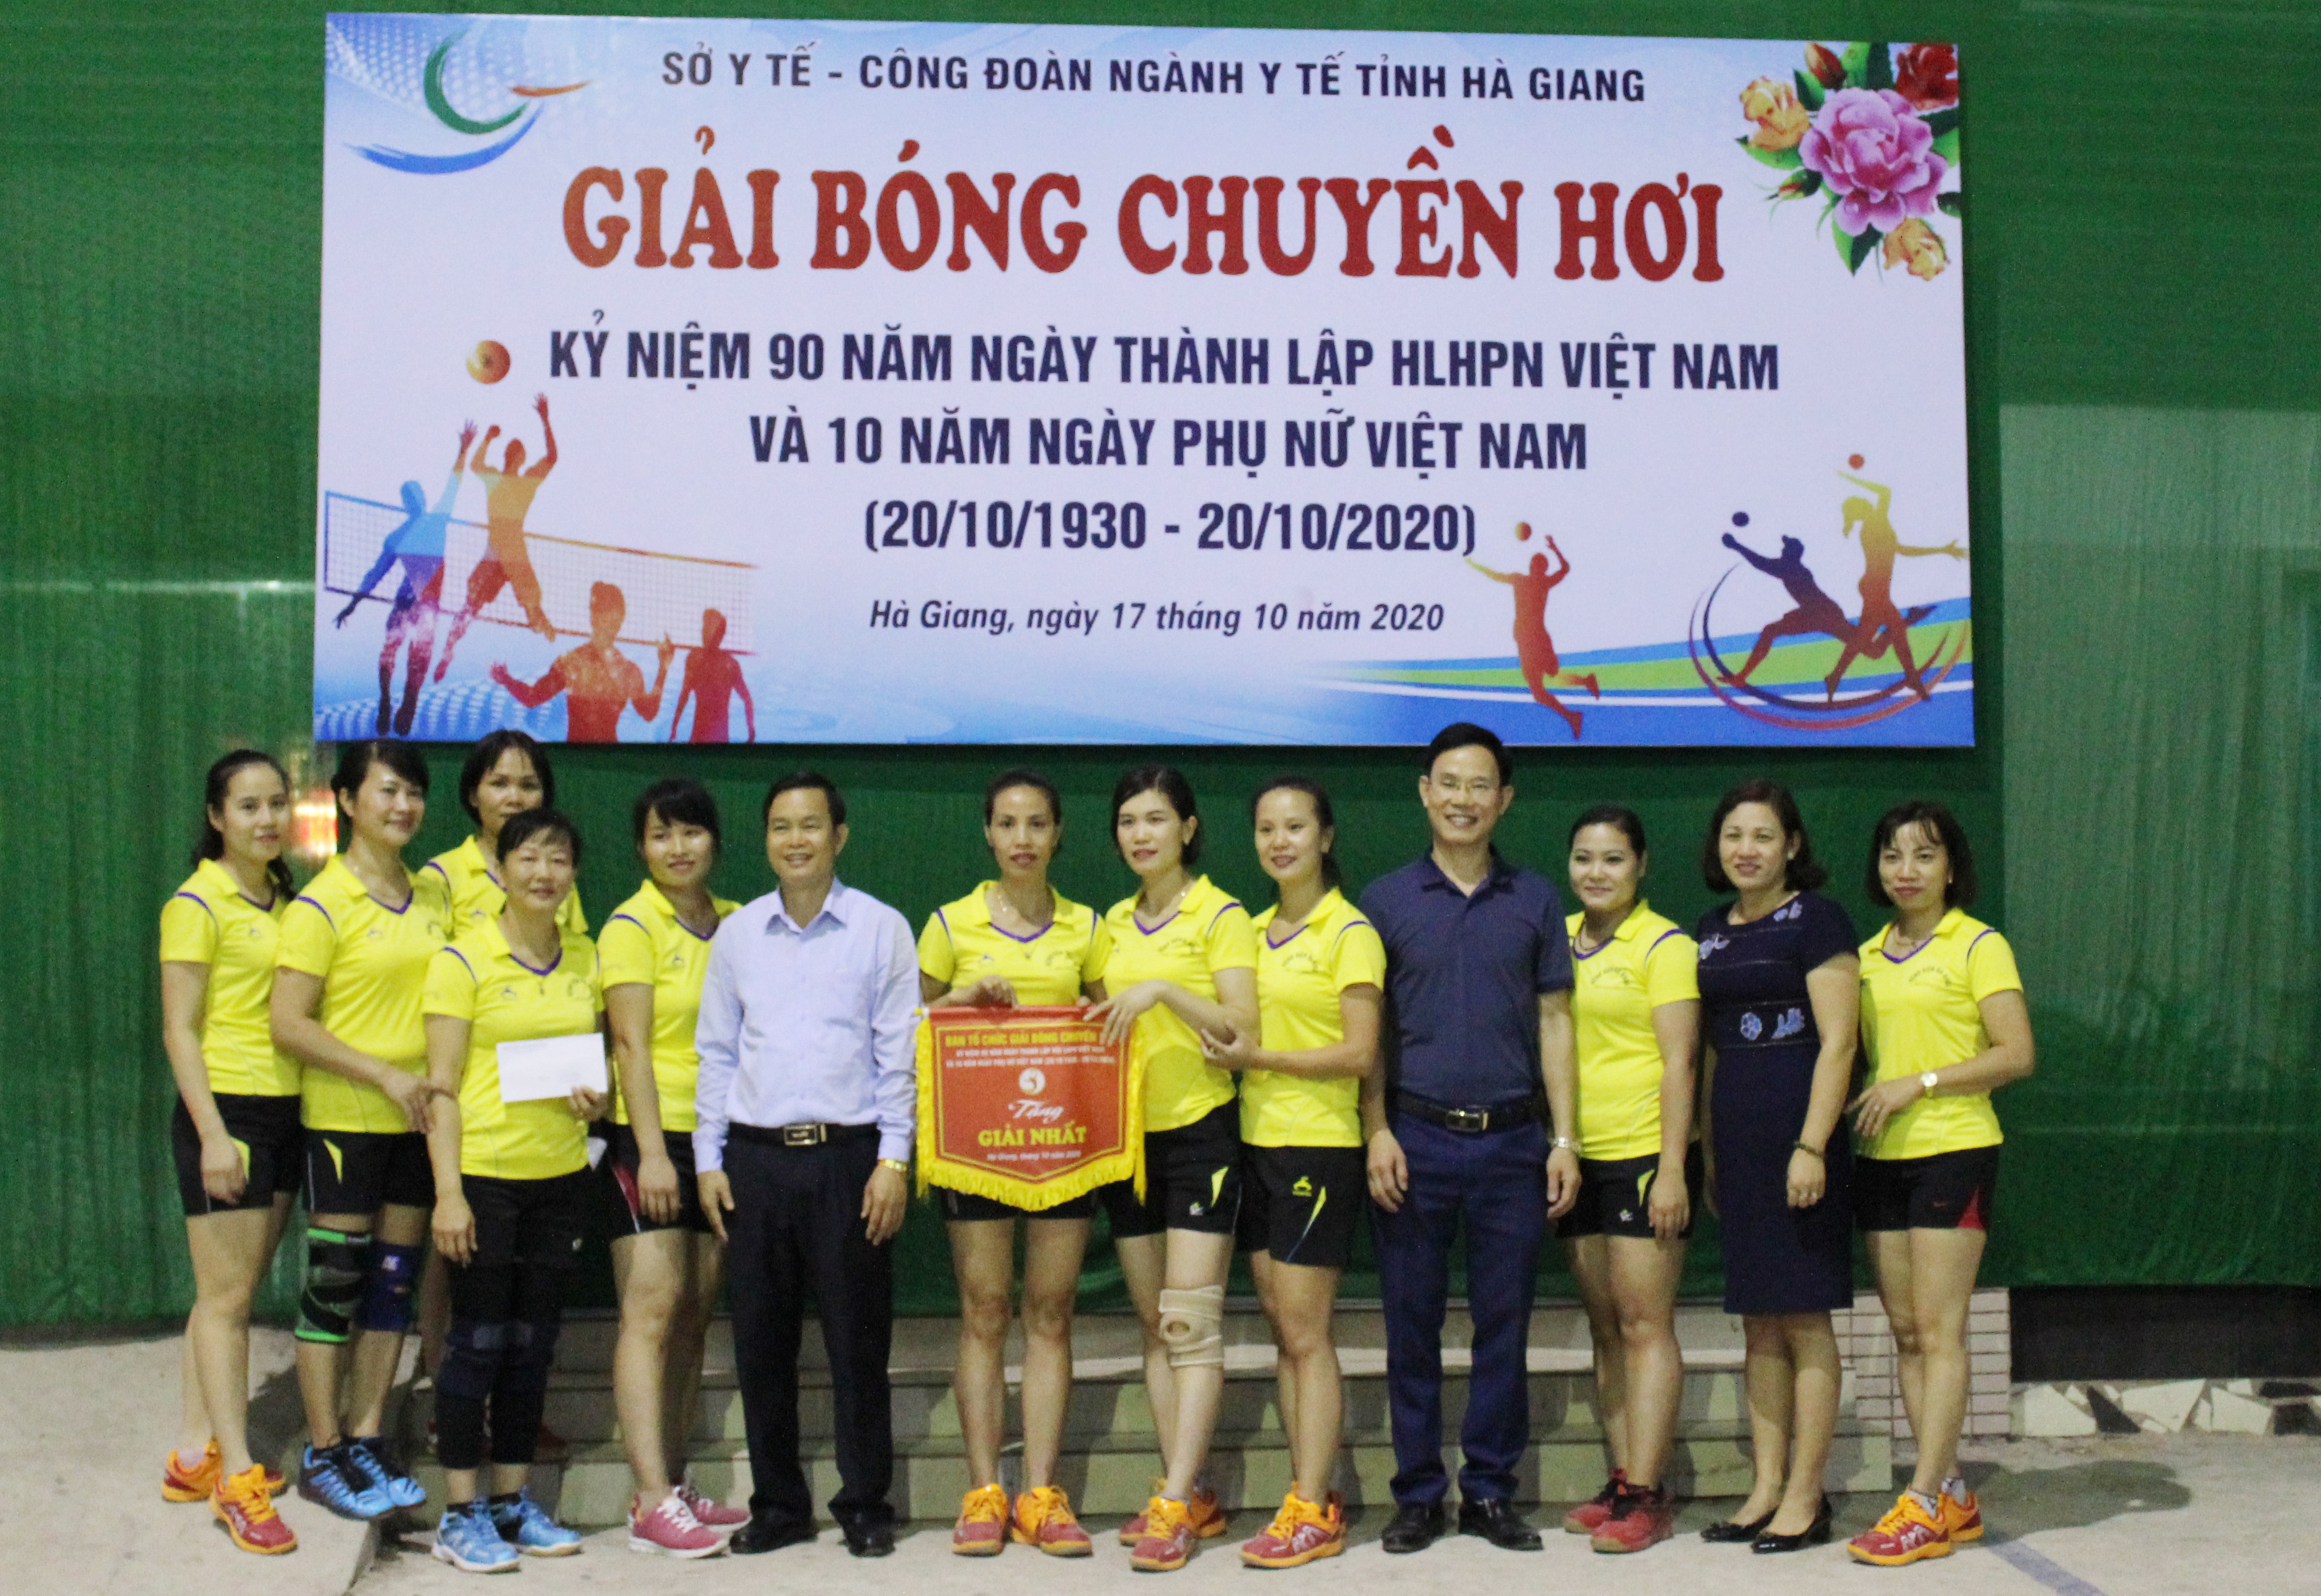 Công đoàn ngành Y tế tổ chức giải bóng chuyền hơi nữ kỷ niệm ngày thành lập Hội LHPN Việt Nam và ngày Phụ nữ Việt Nam